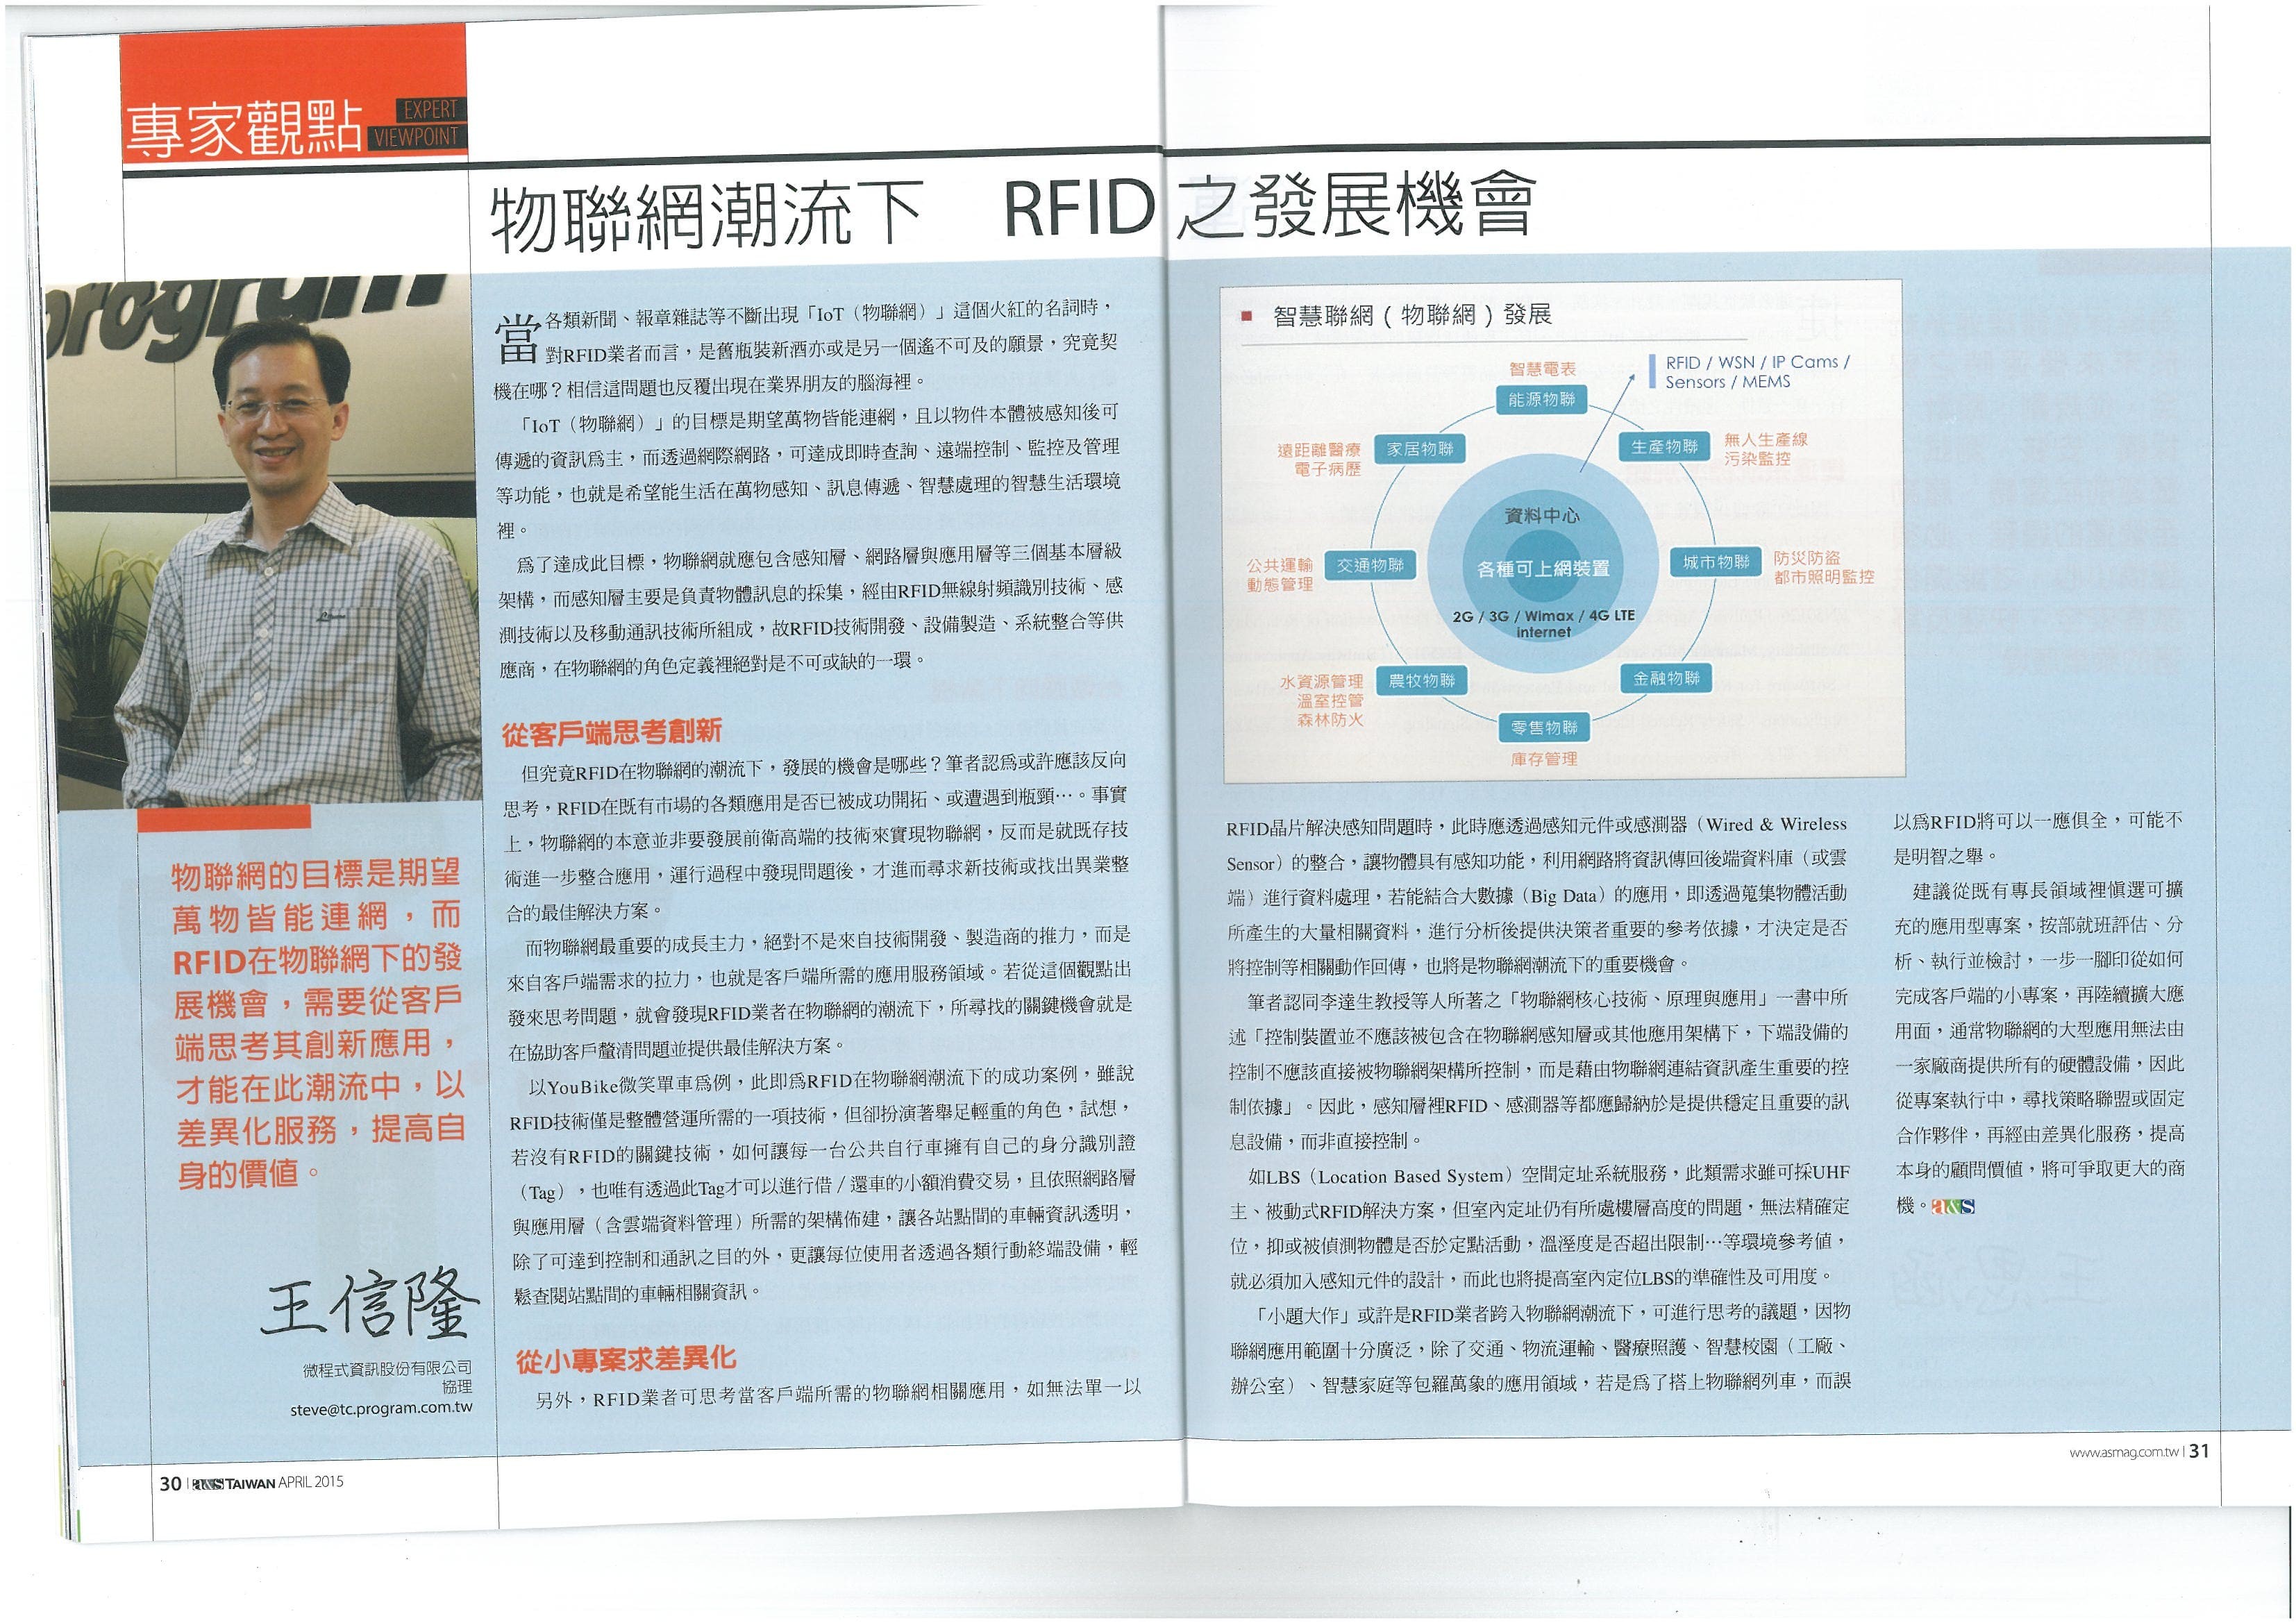 微程式協理王信隆-物聯網潮流下  RFID之發展機會